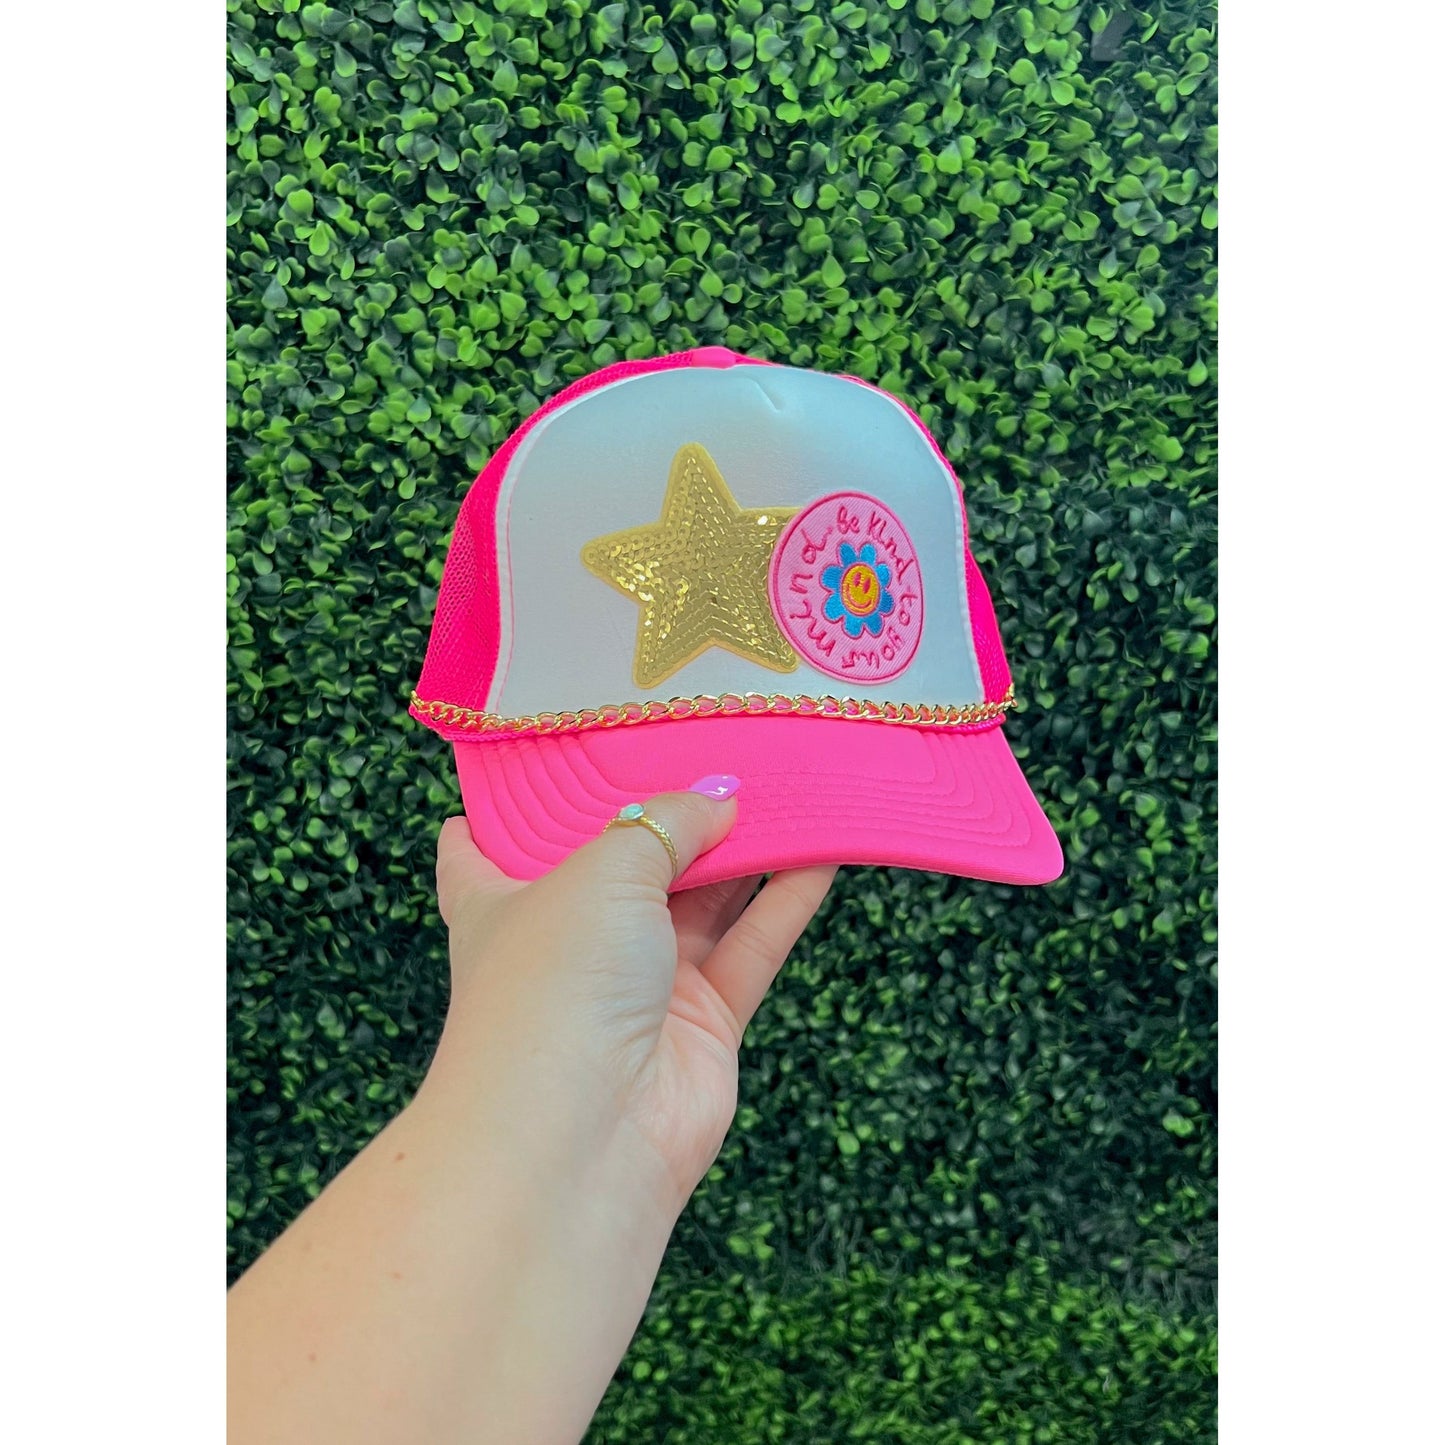 Custom Trucker Hat, Neon Pink/White